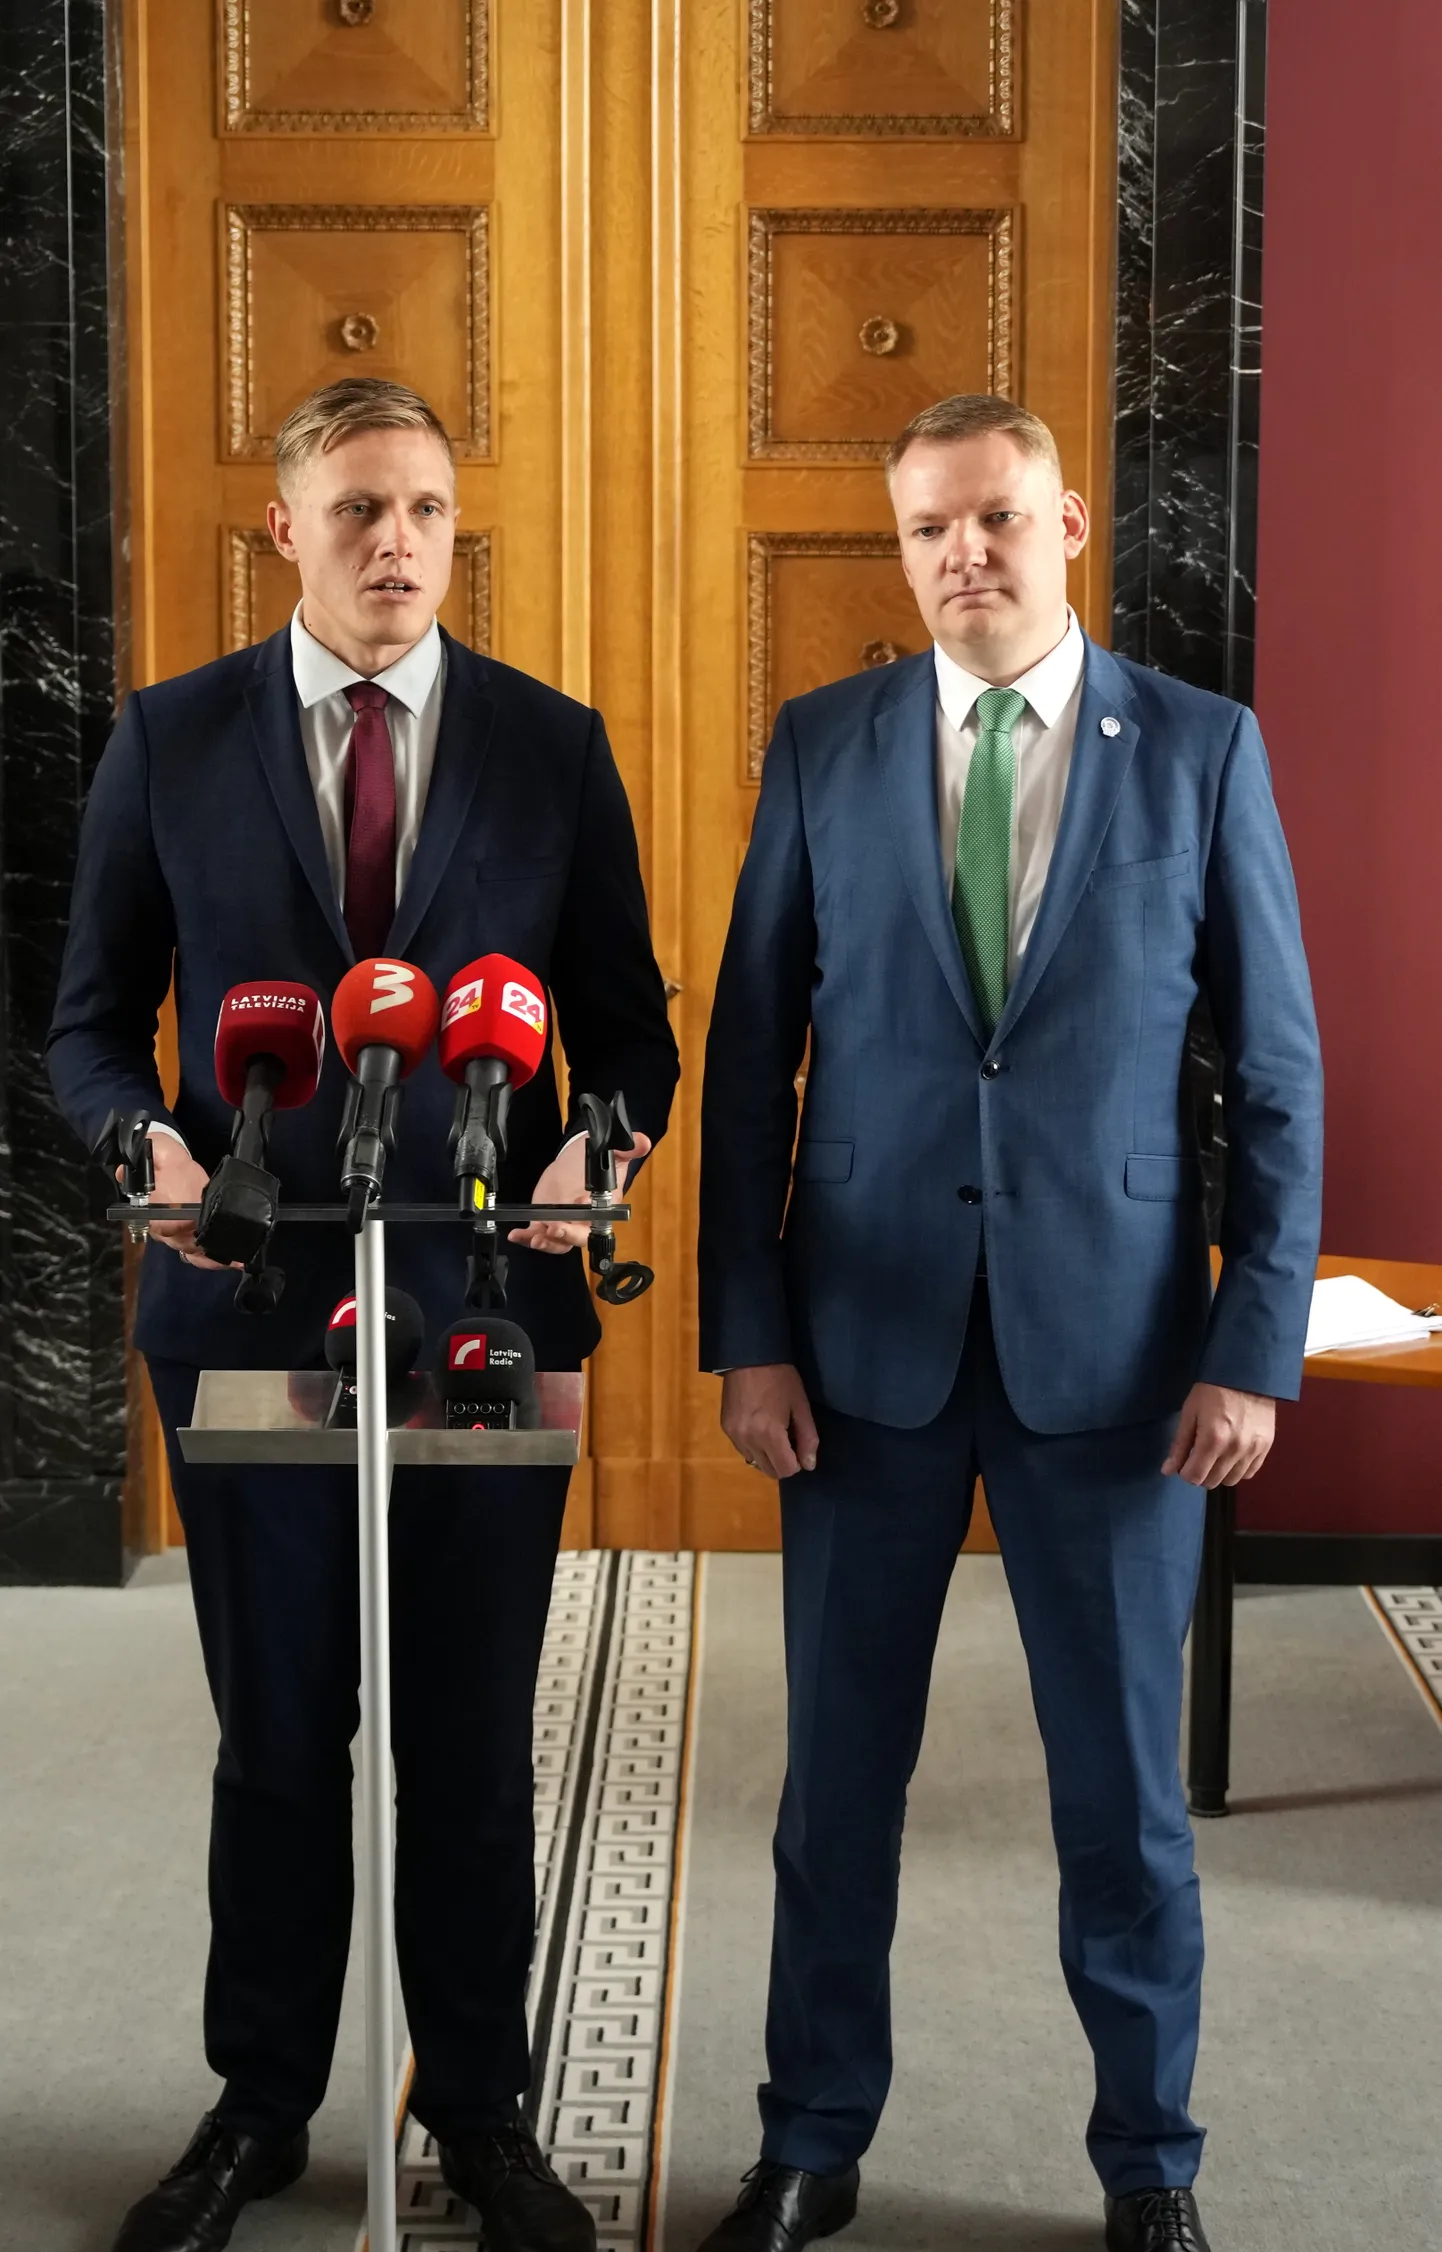 Nacionālās apvienības "Visu Latvijai!" – "Tēvzemei un Brīvībai/LNNK" pārstāvis, Saeimas deputāts Jānis Dombrava (no kreisās) un "Apvienotais saraksts" līdzpriekšsēdētājs, Saeimas priekšsēdētājs Edvards Smiltēns piedalās preses brīfingā pēc tikšanās ar partijas "Jaunā vienotība" pārstāvjiem, kurā pārrunāja valdības koalīcijas veidošanas gaitu.